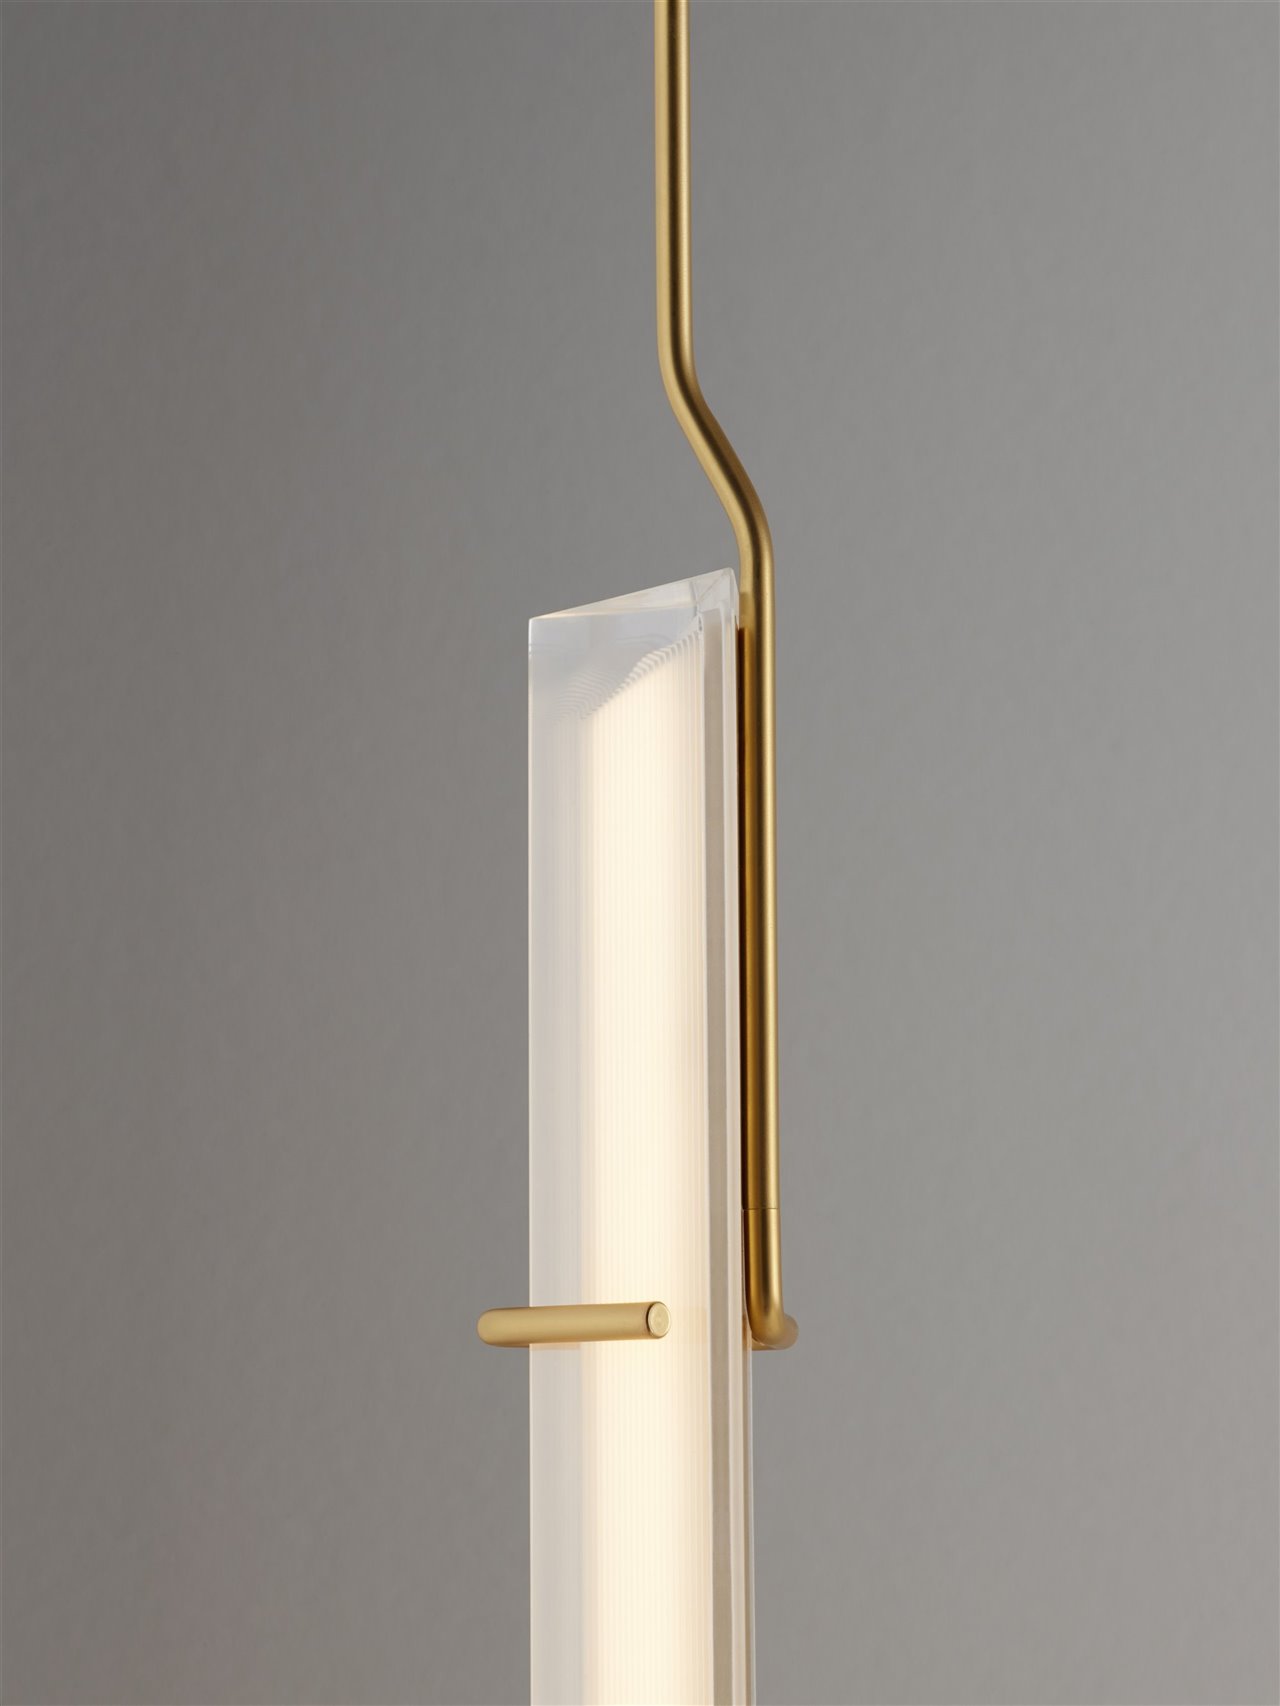 El diseño, de Martín Azúa, eleva la luminaria a la categoría de joya.